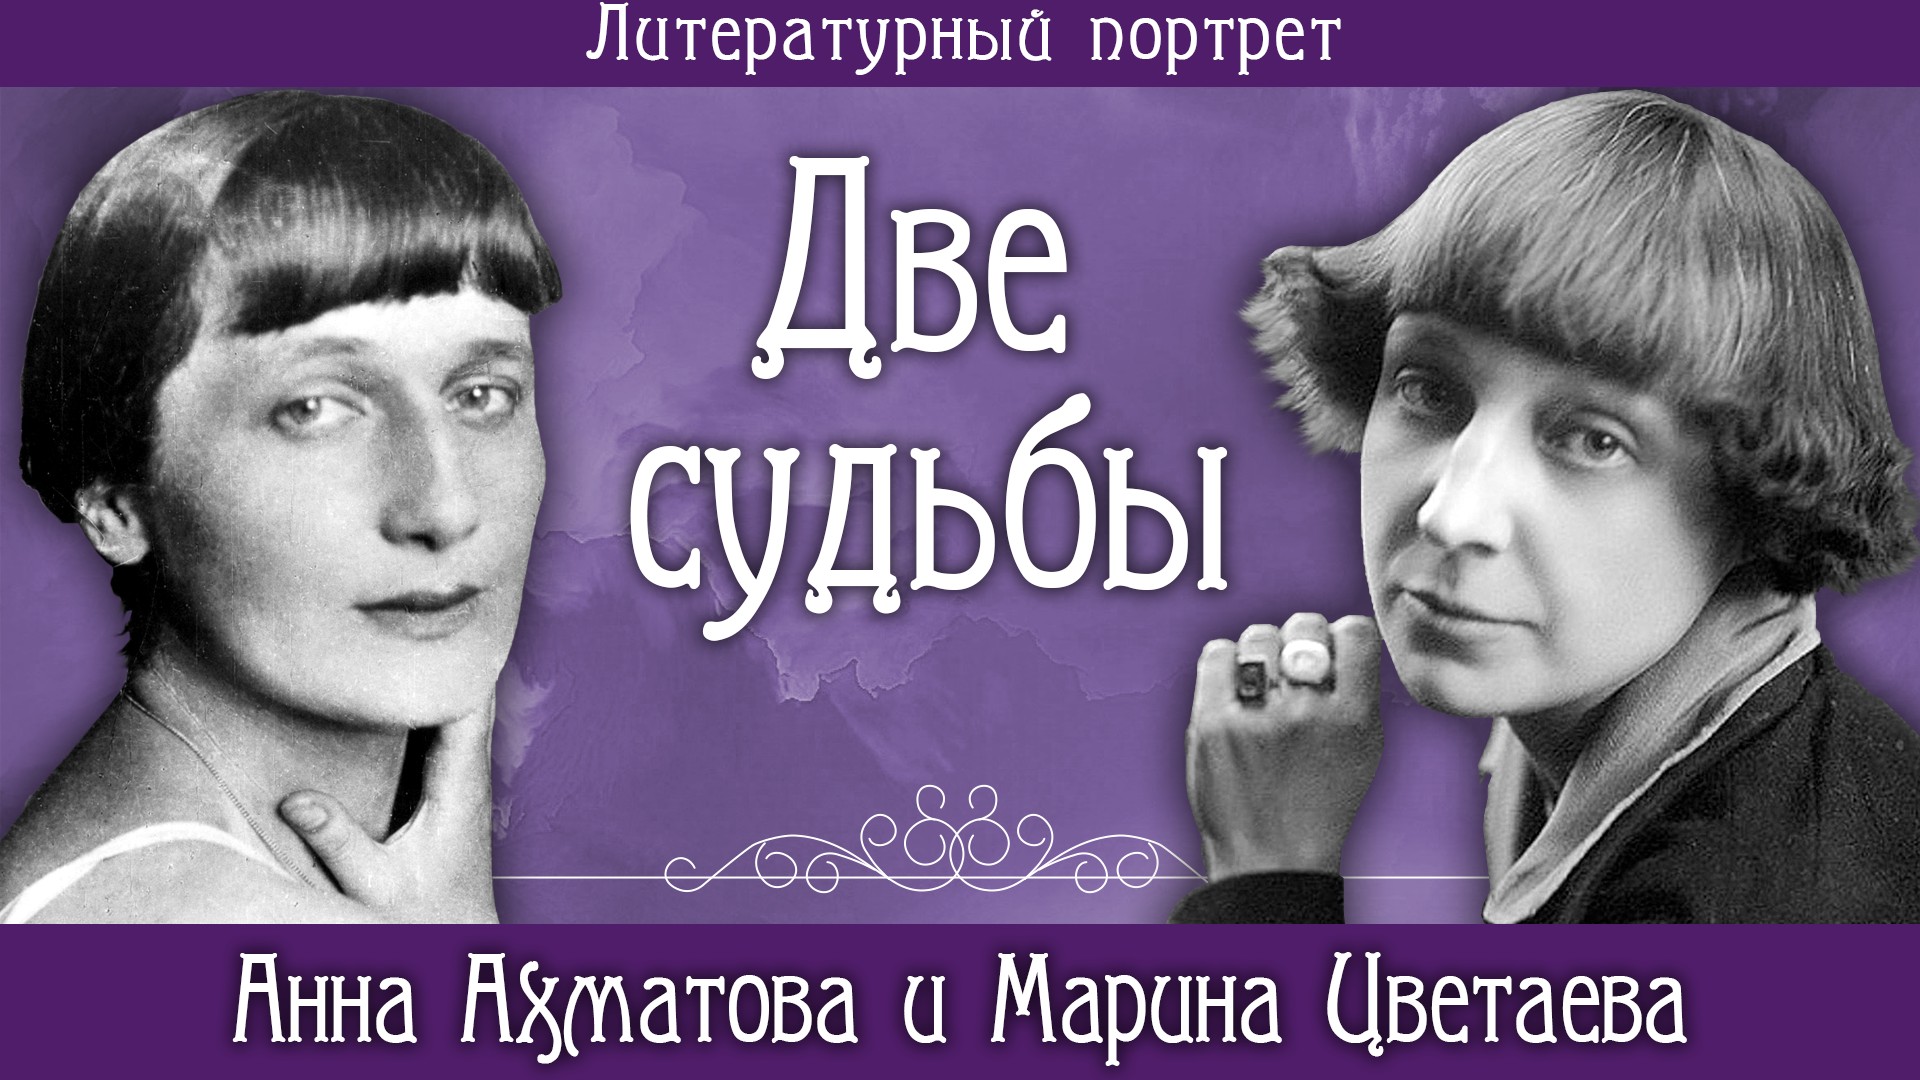 Анна Ахматова и Марина Цветаева